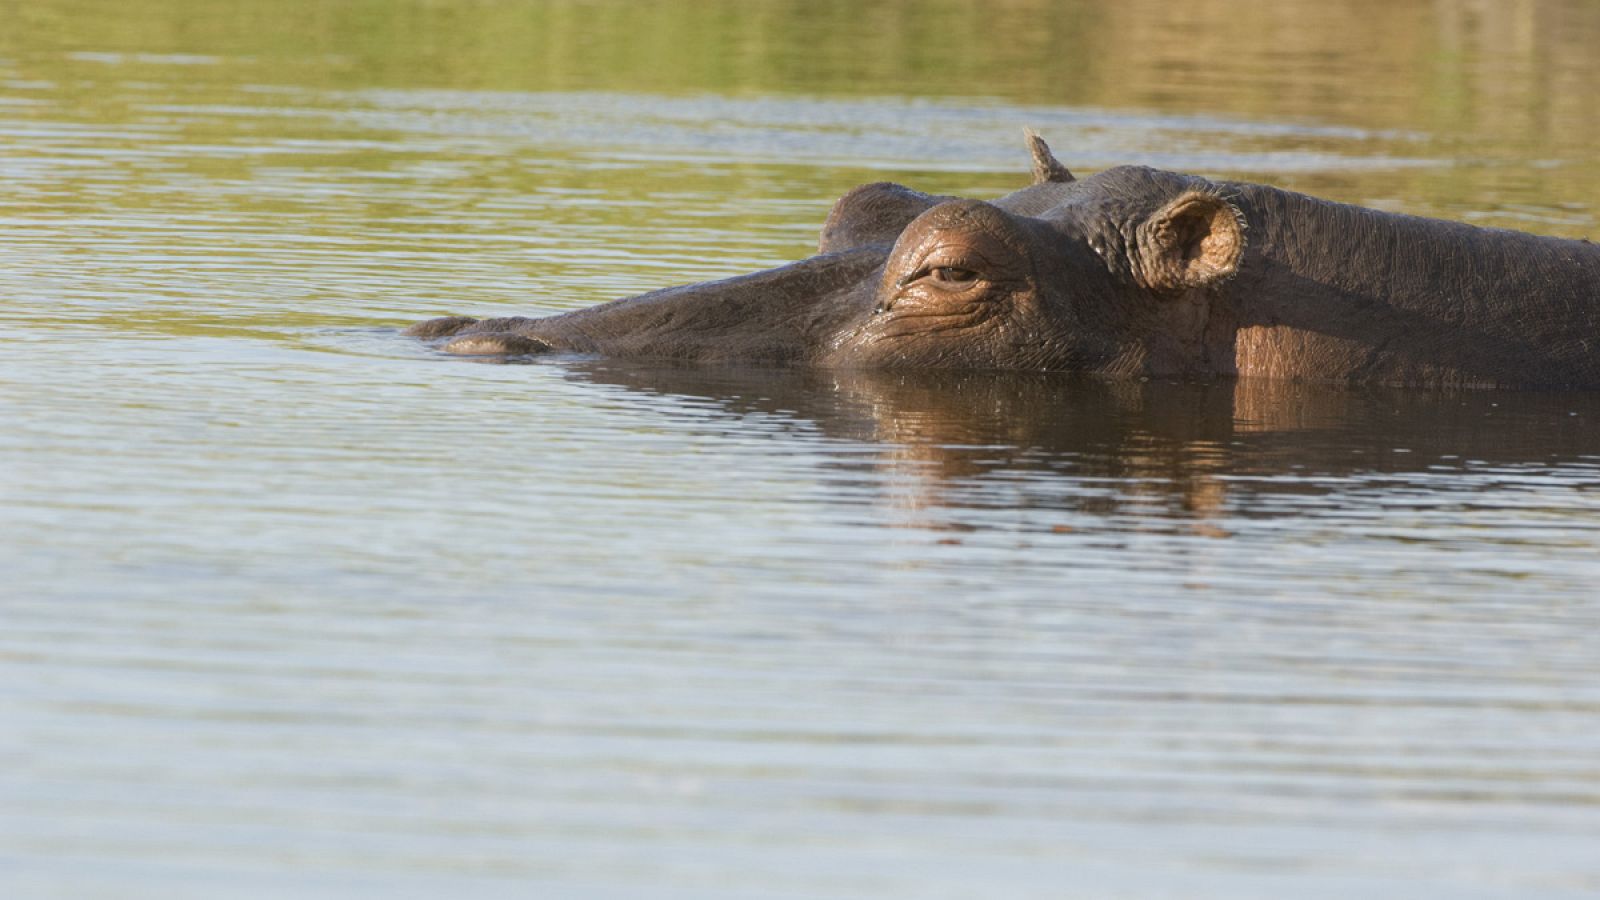 El origen de los hipopótamos se da en África, pero hace unos 6 millones de años hubo una migración de estos hacia Europa y el sur de Asia